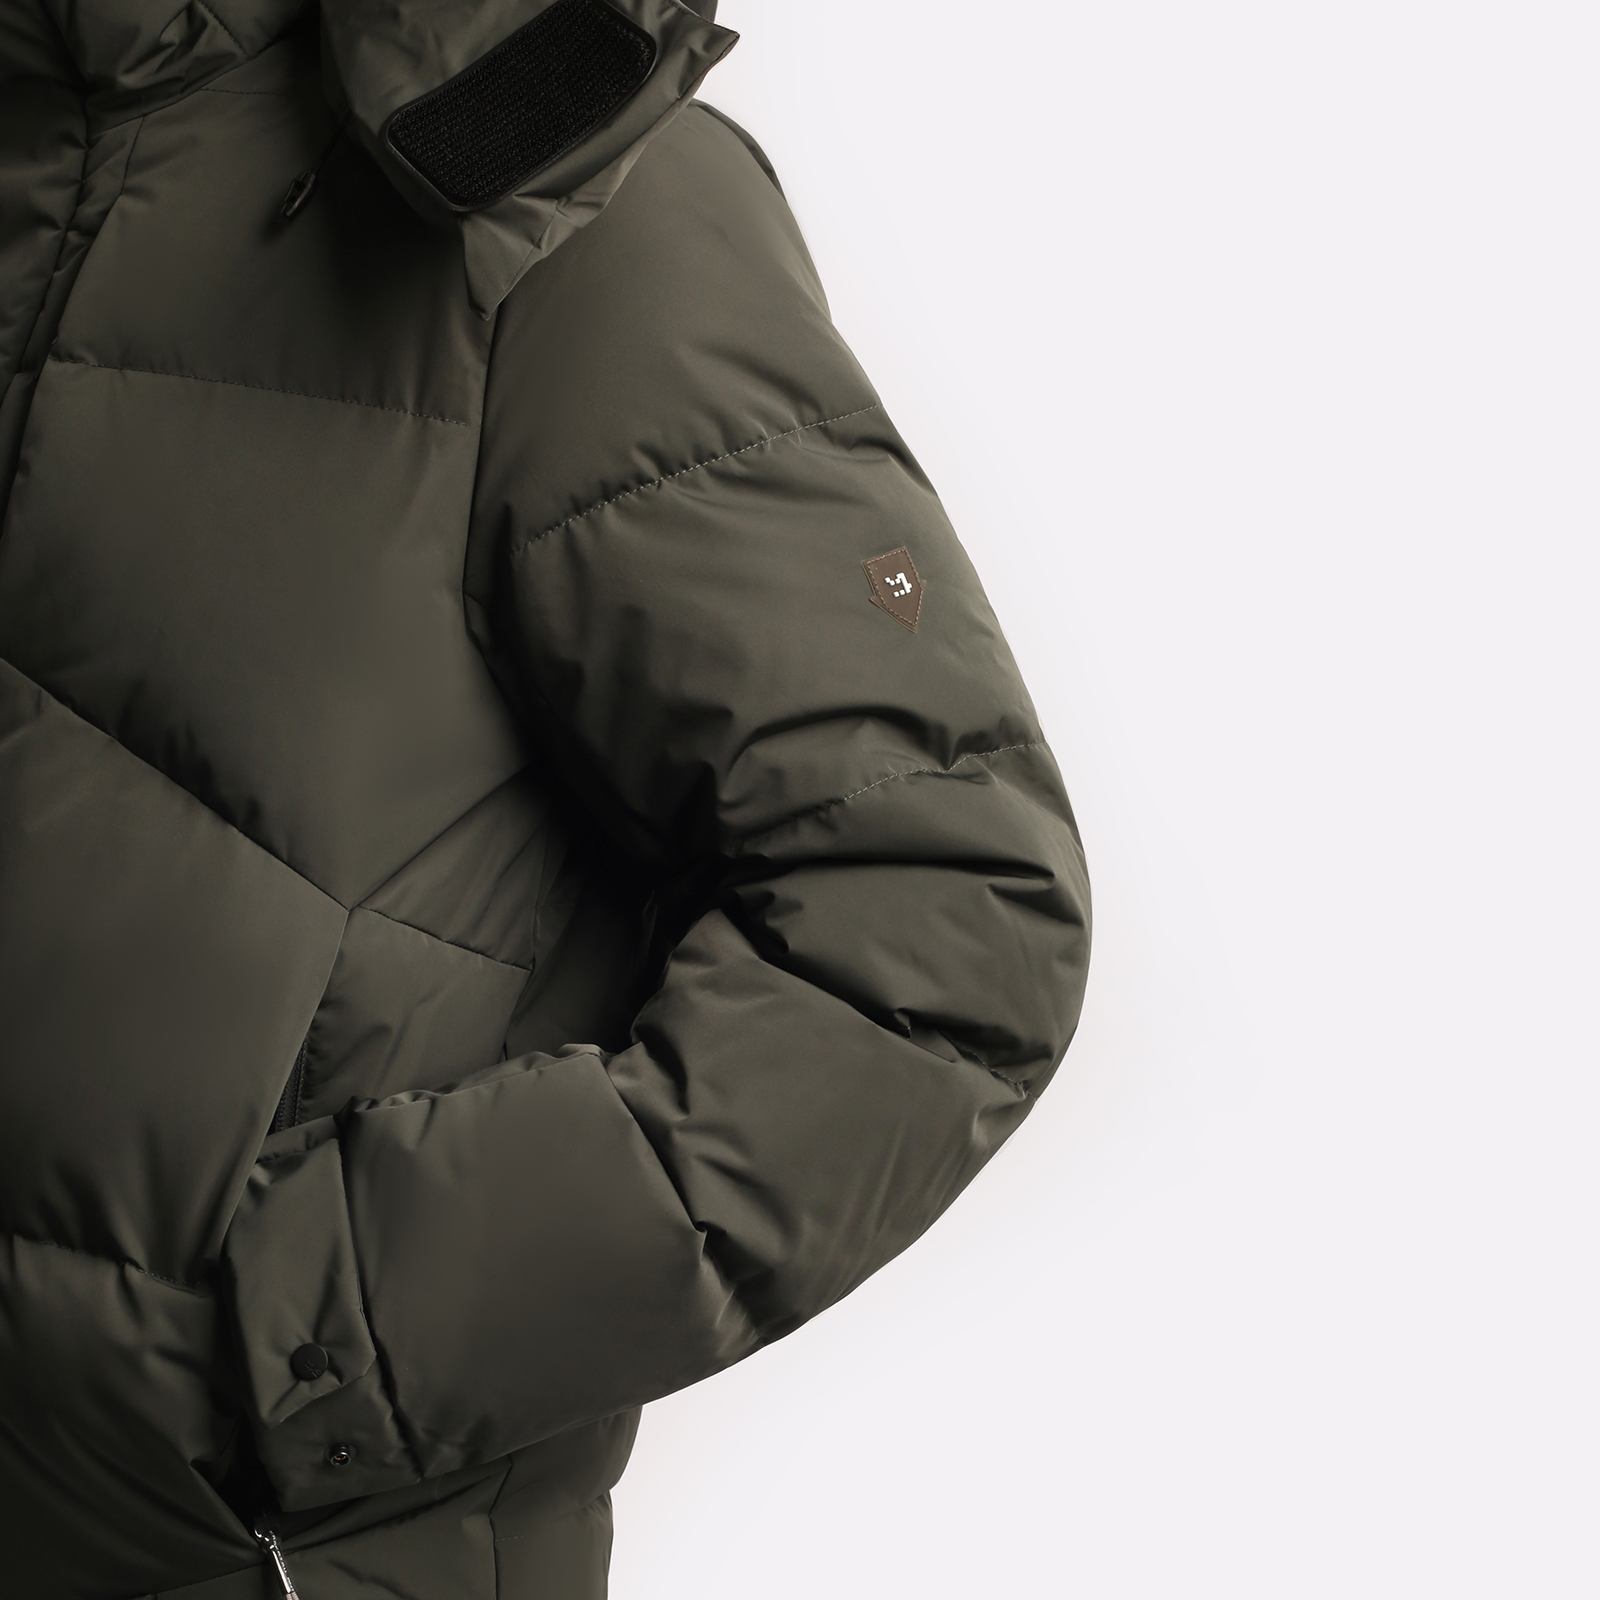 мужская серая куртка KRAKATAU Aitken  Qm440-52 ел-серый - цена, описание, фото 9